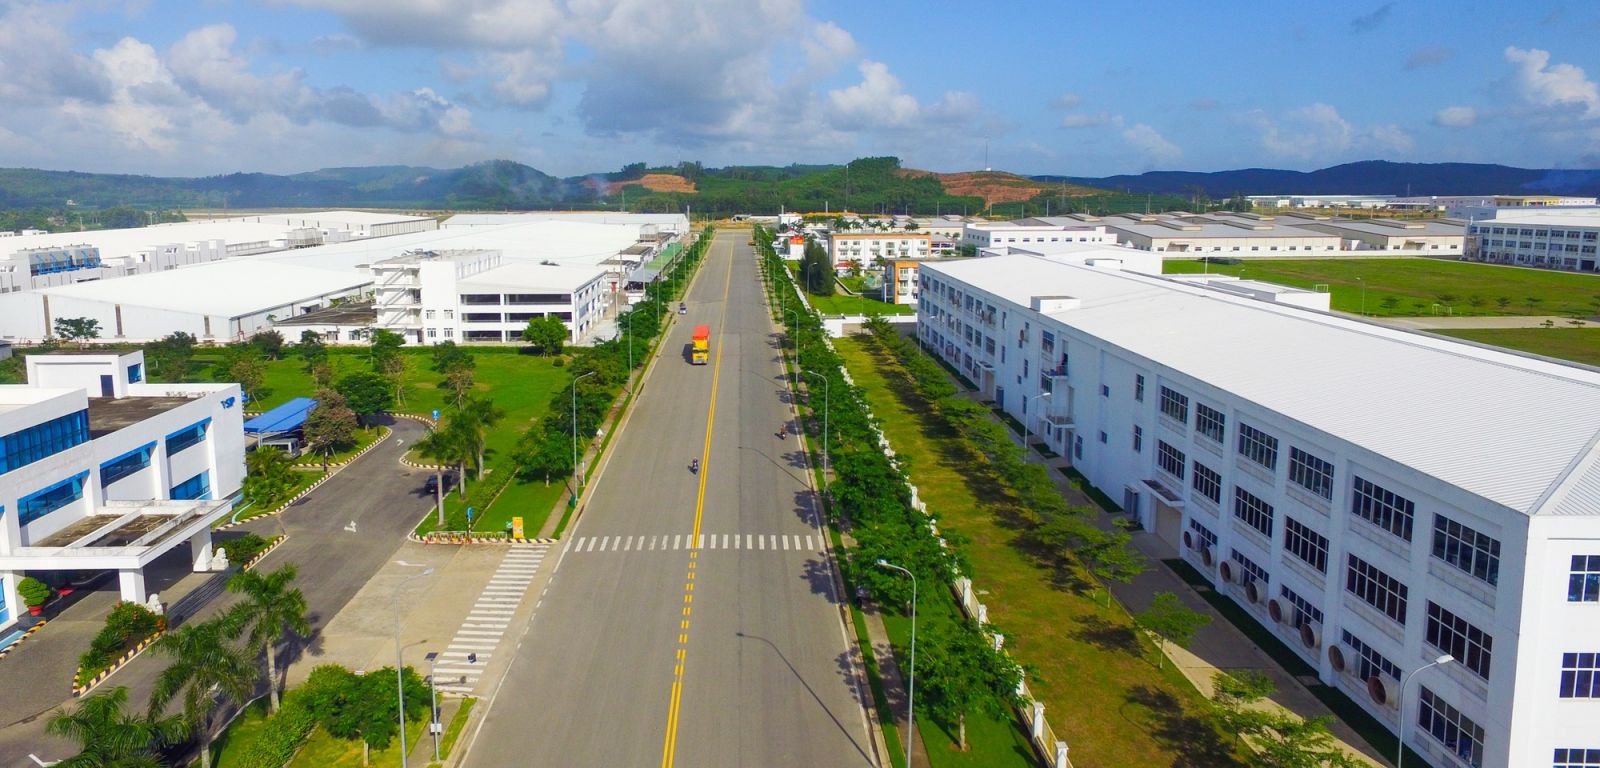 Khu dân cư và dịch vụ phục vụ KCN Tịnh Phong tại xã Tịnh Phong, huyện Sơn Tịnh, tỉnh Quảng Ngãi, với diện tích khoảng 8,07 ha. Dự kiến bố trí 240 lô đất, đáp ứng cho 1.000 người